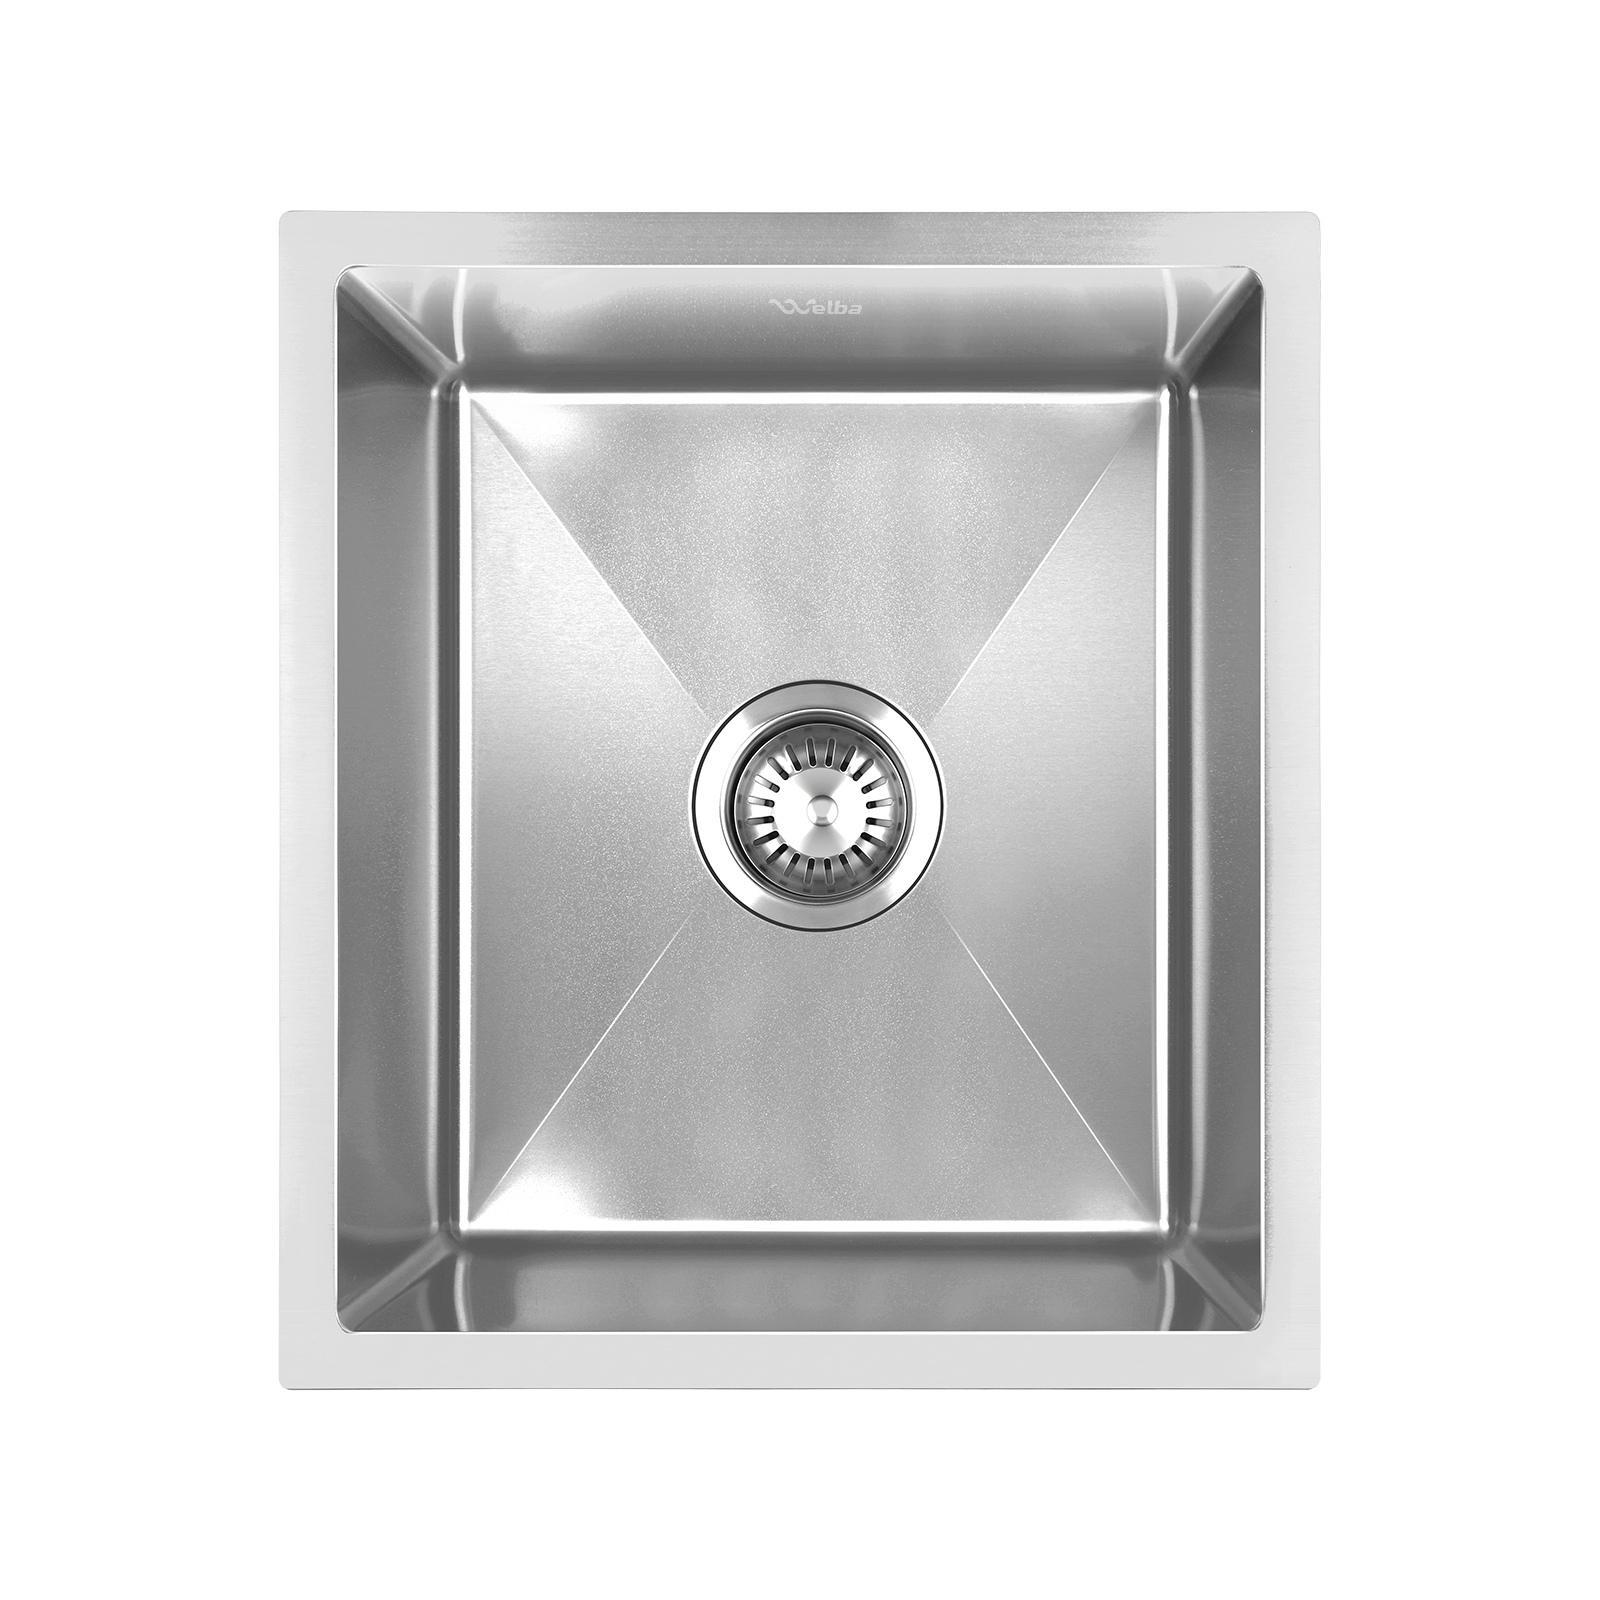 Welba Kitchen Sink 38X44CM Stainless Steel Silver